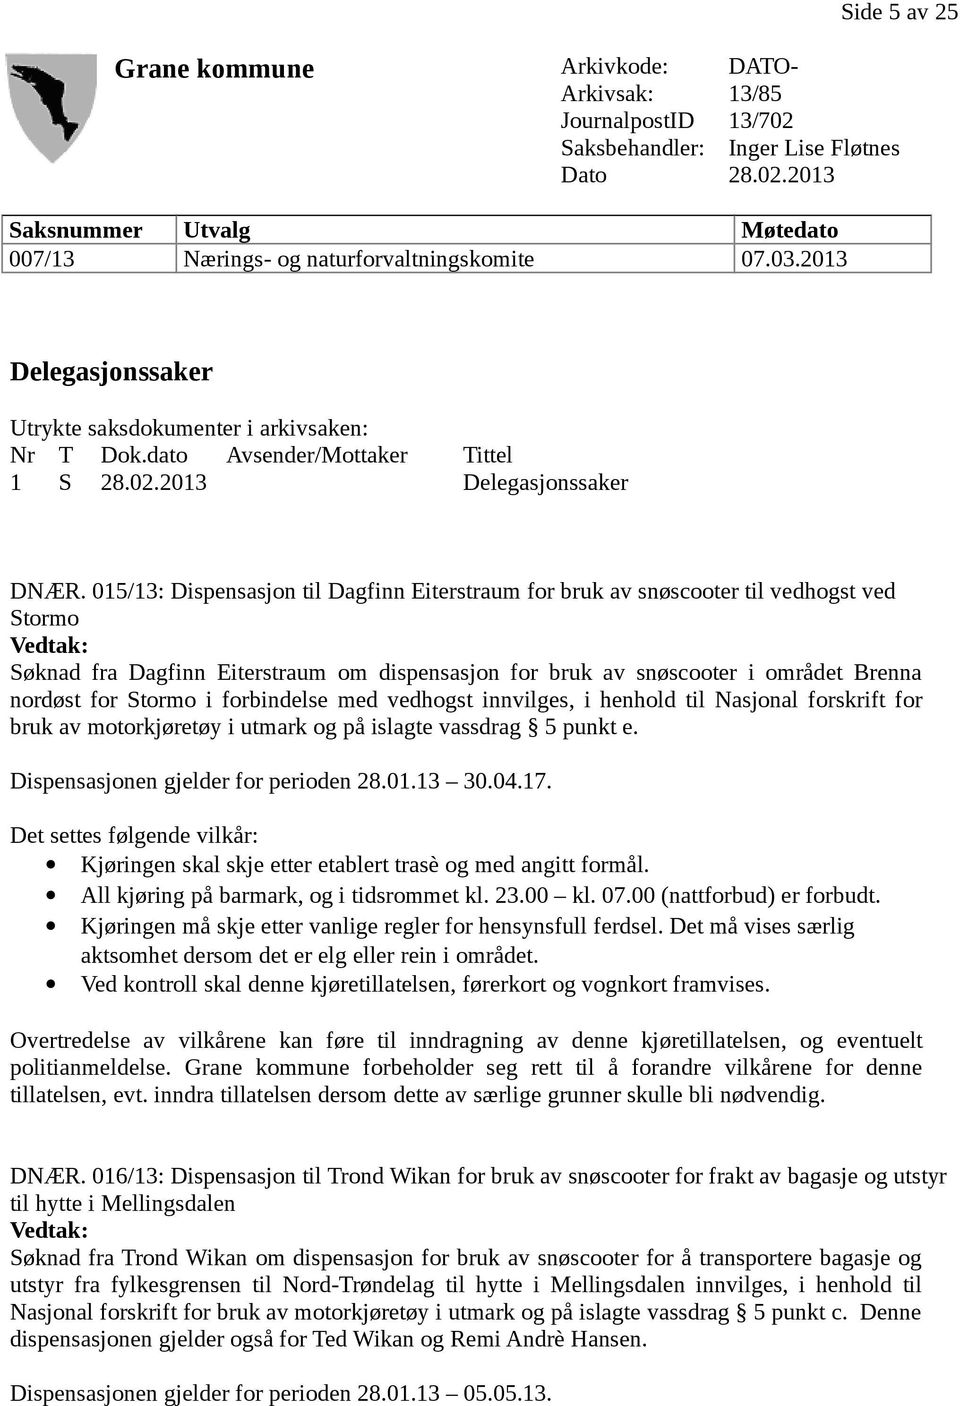 015/13: Dispensasjon til Dagfinn Eiterstraum for bruk av snøscooter til vedhogst ved Stormo Søknad fra Dagfinn Eiterstraum om dispensasjon for bruk av snøscooter i området Brenna nordøst for Stormo i